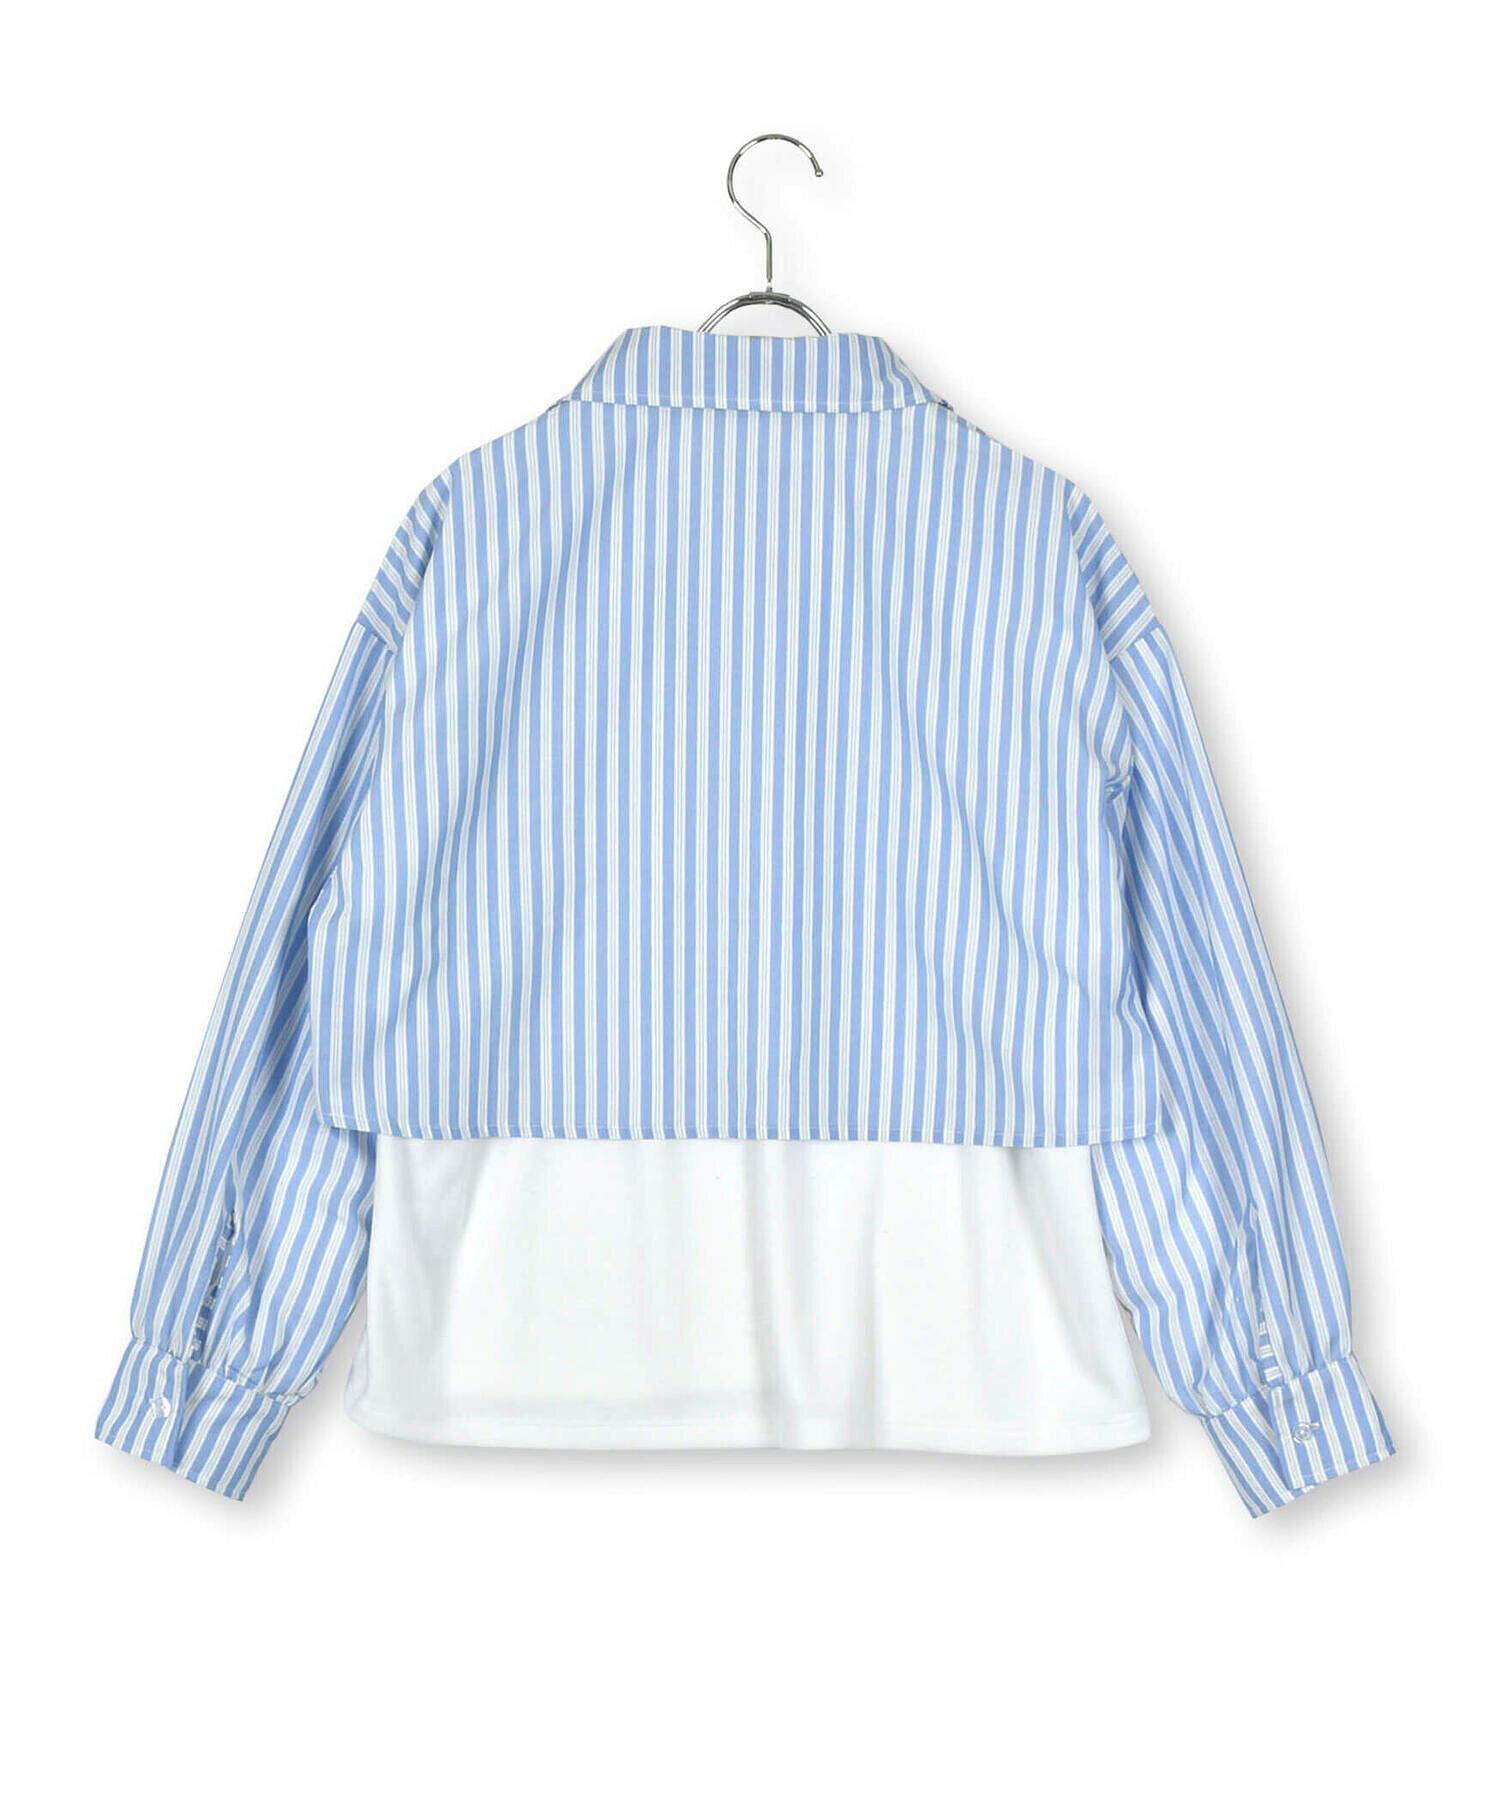 【 ニコ☆プチ 掲載 】ストライプシャツ&ロゴ刺しゅうTシャツセット(130~160cm)